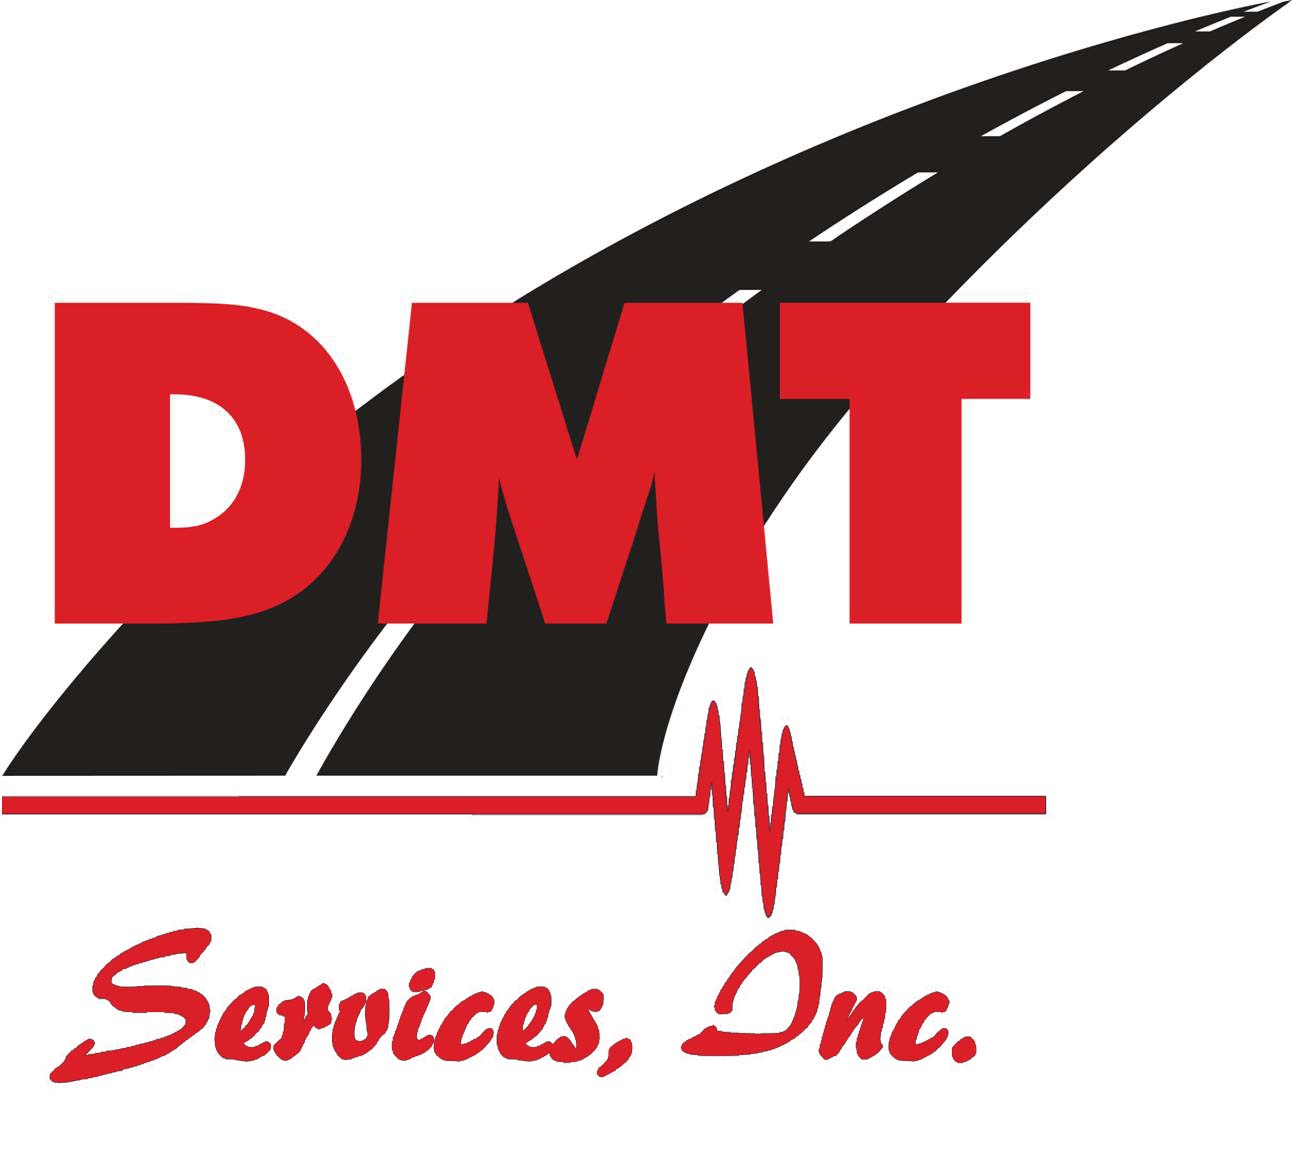 D.M.T. Services, Inc.